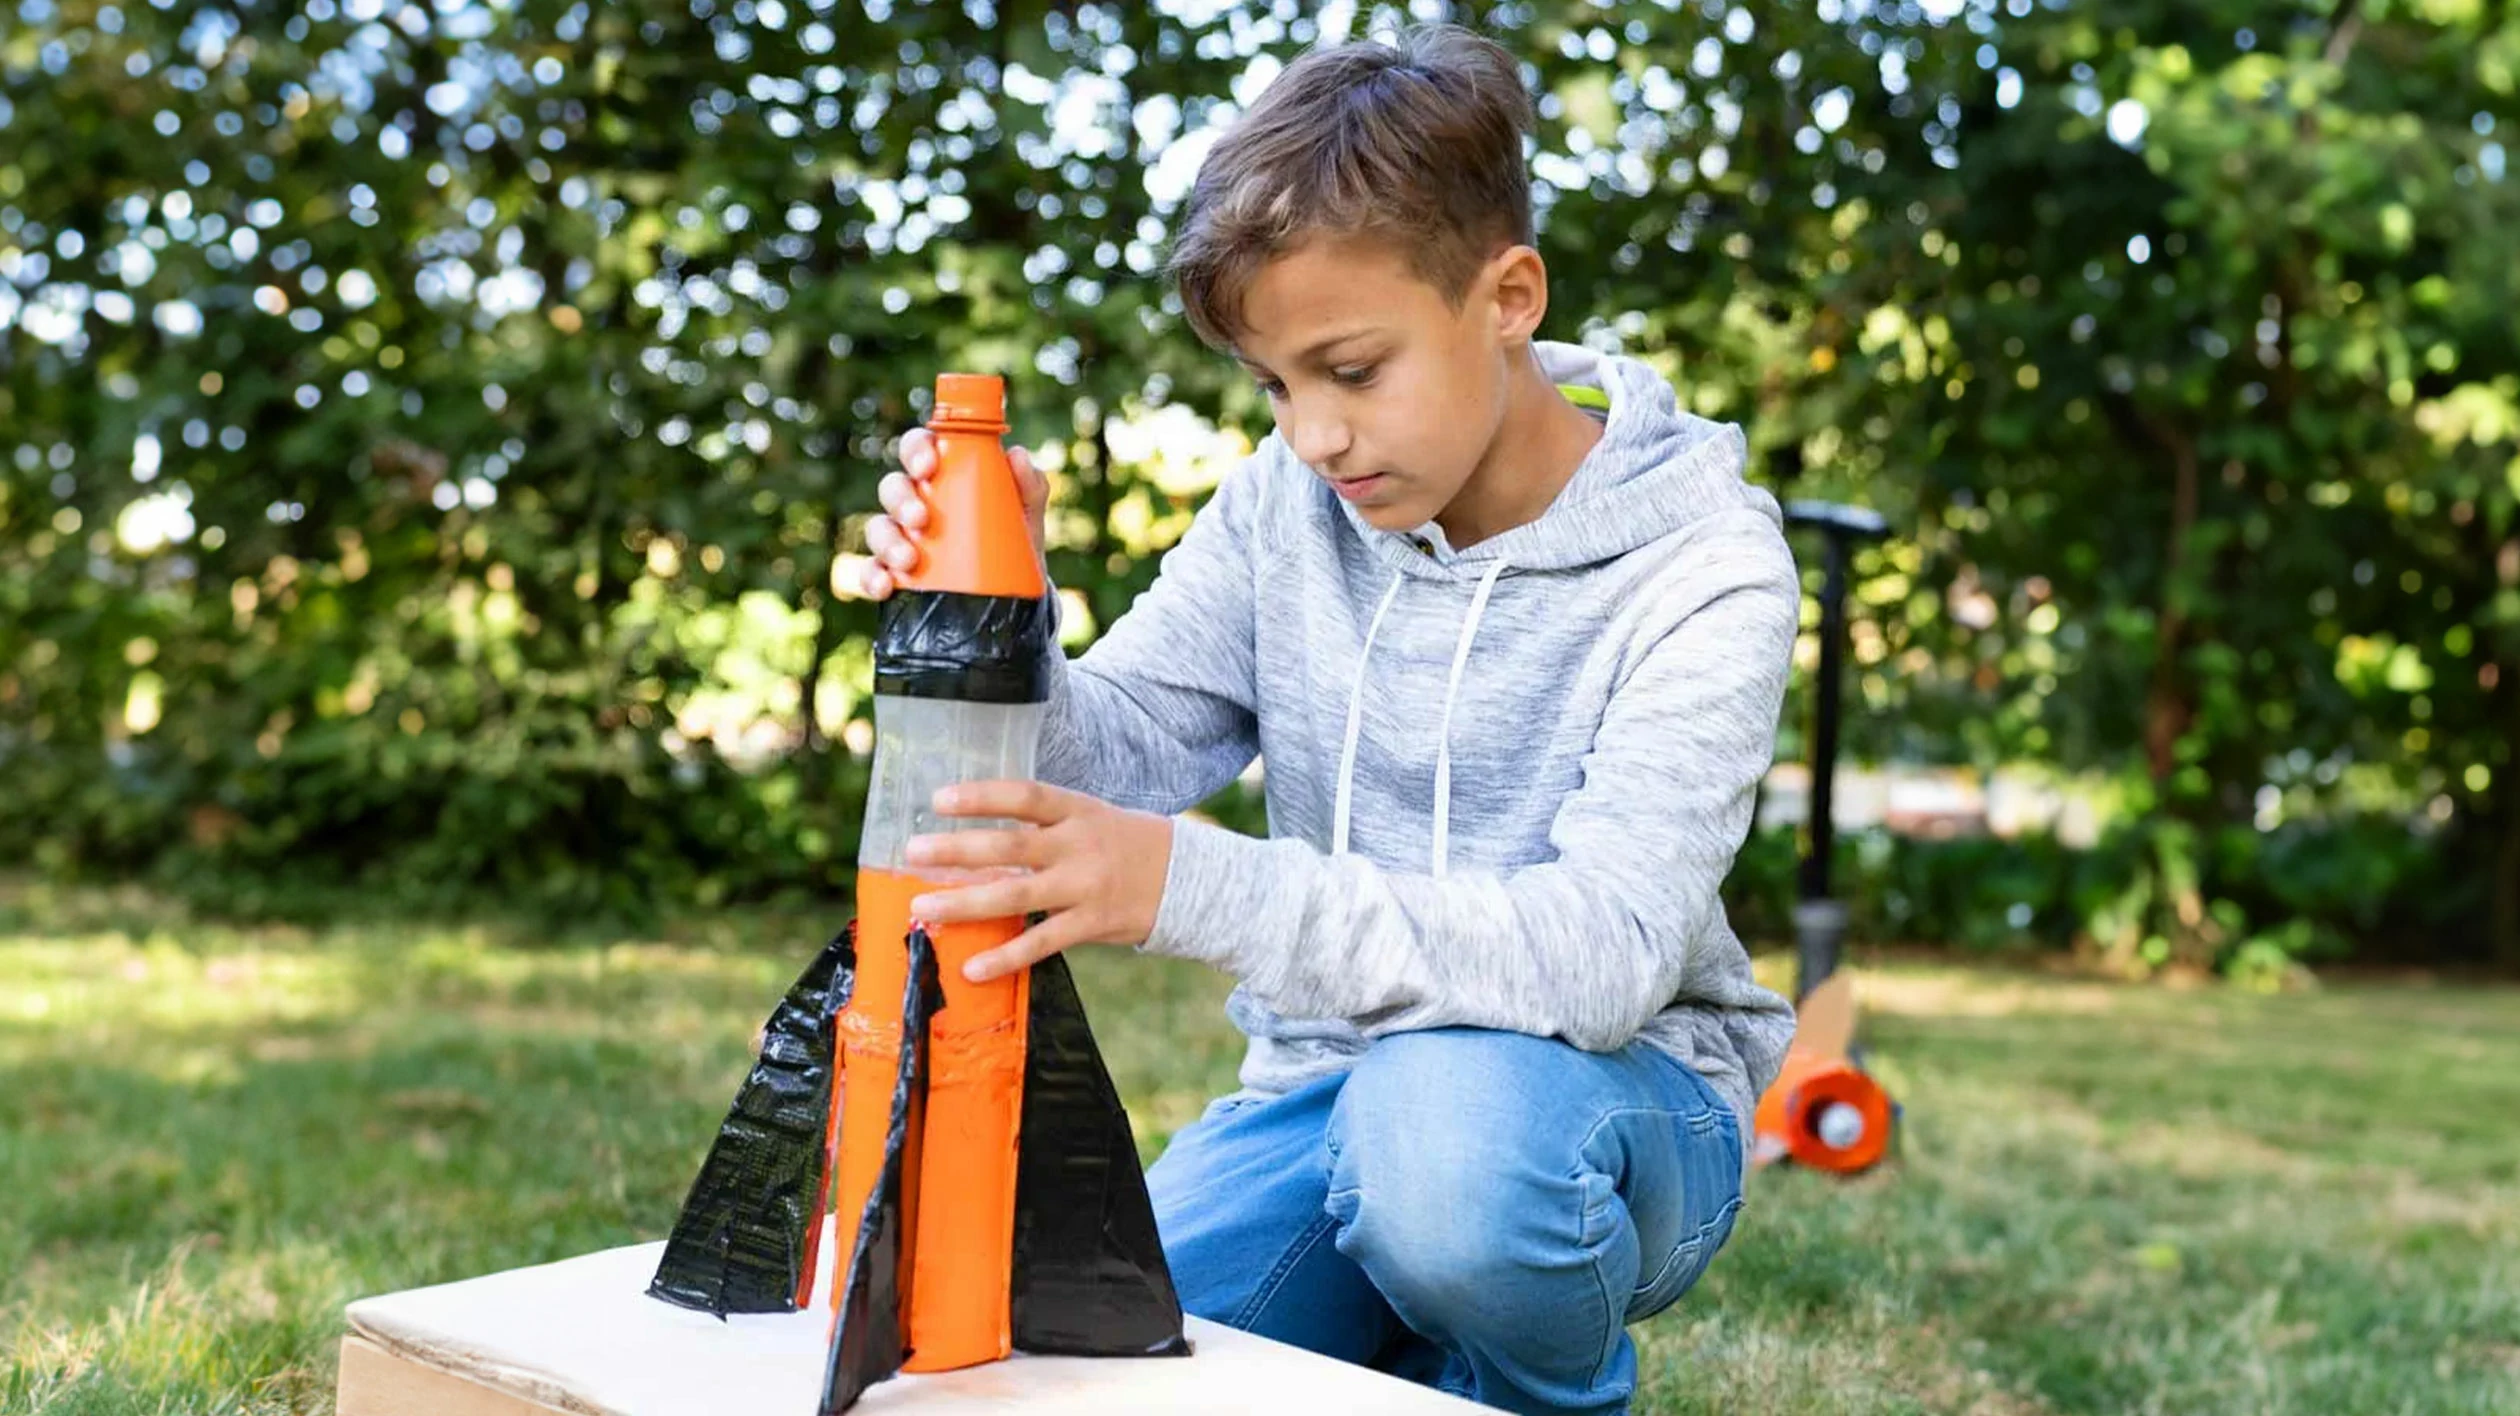 Ein Junge kniet im Gras und bastelt an einem Kinderspielzeug in Form einer Rakete.